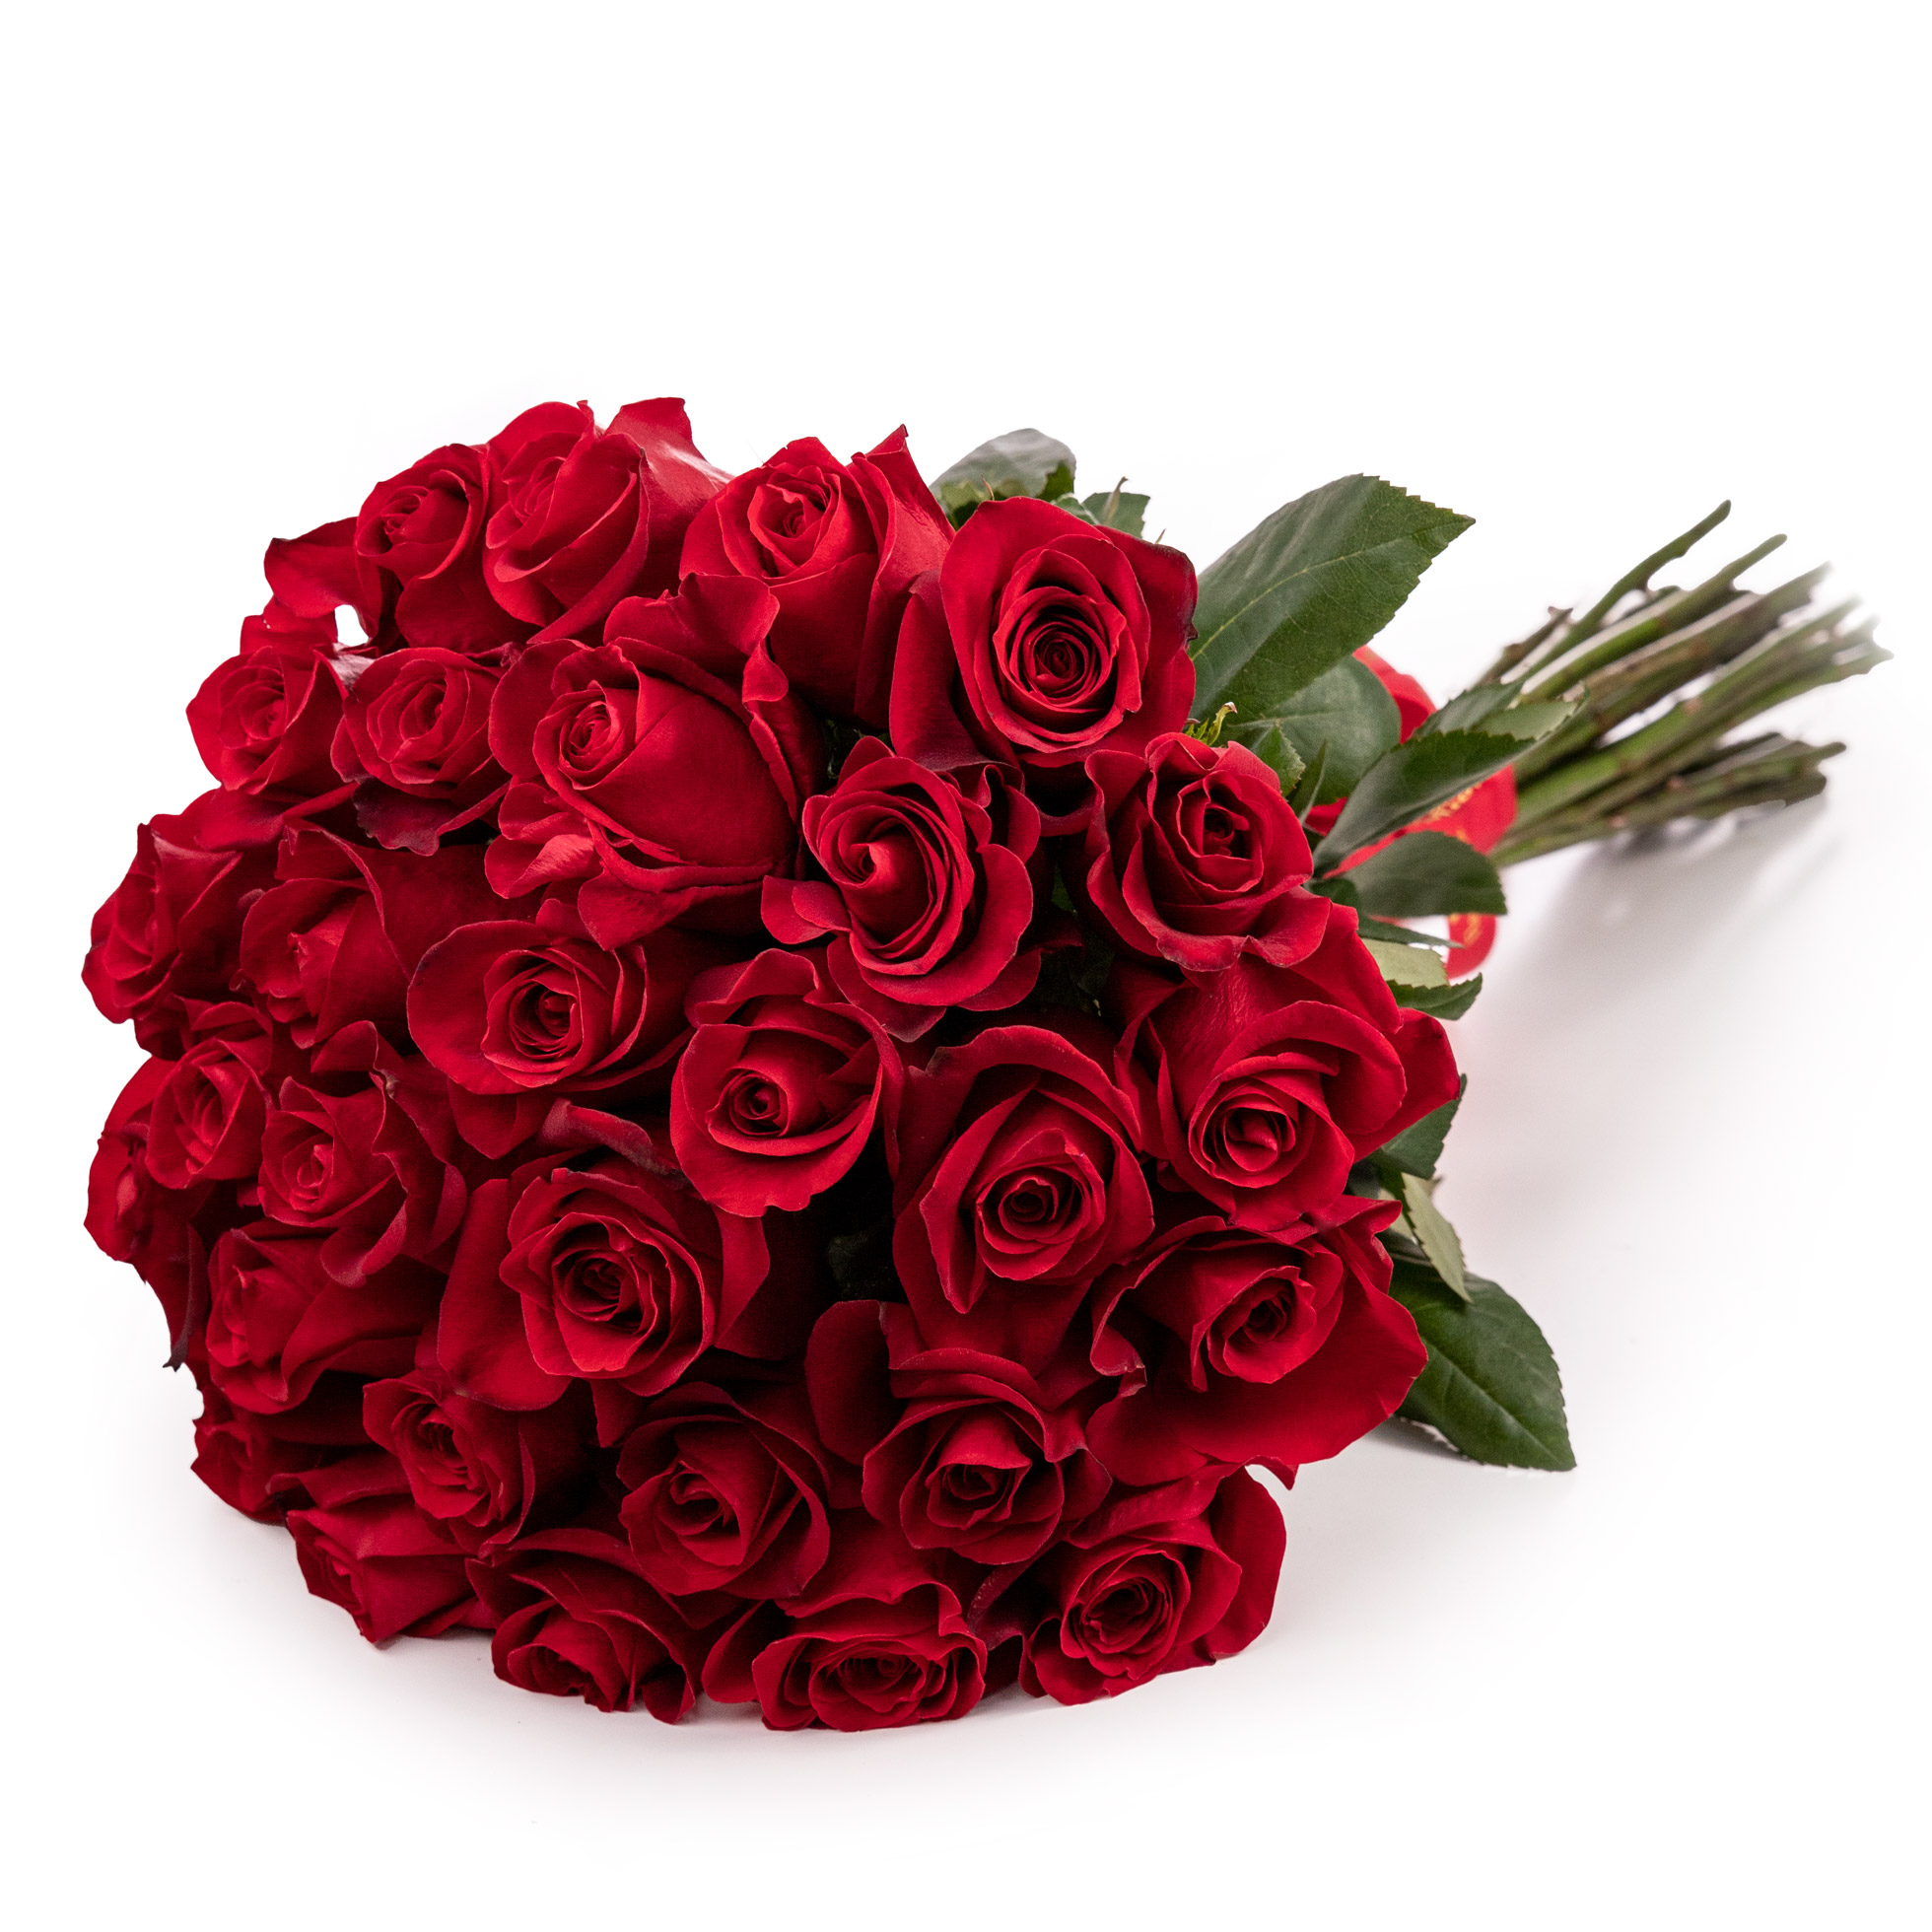 Buchet cu trandafiri red touch-Premium